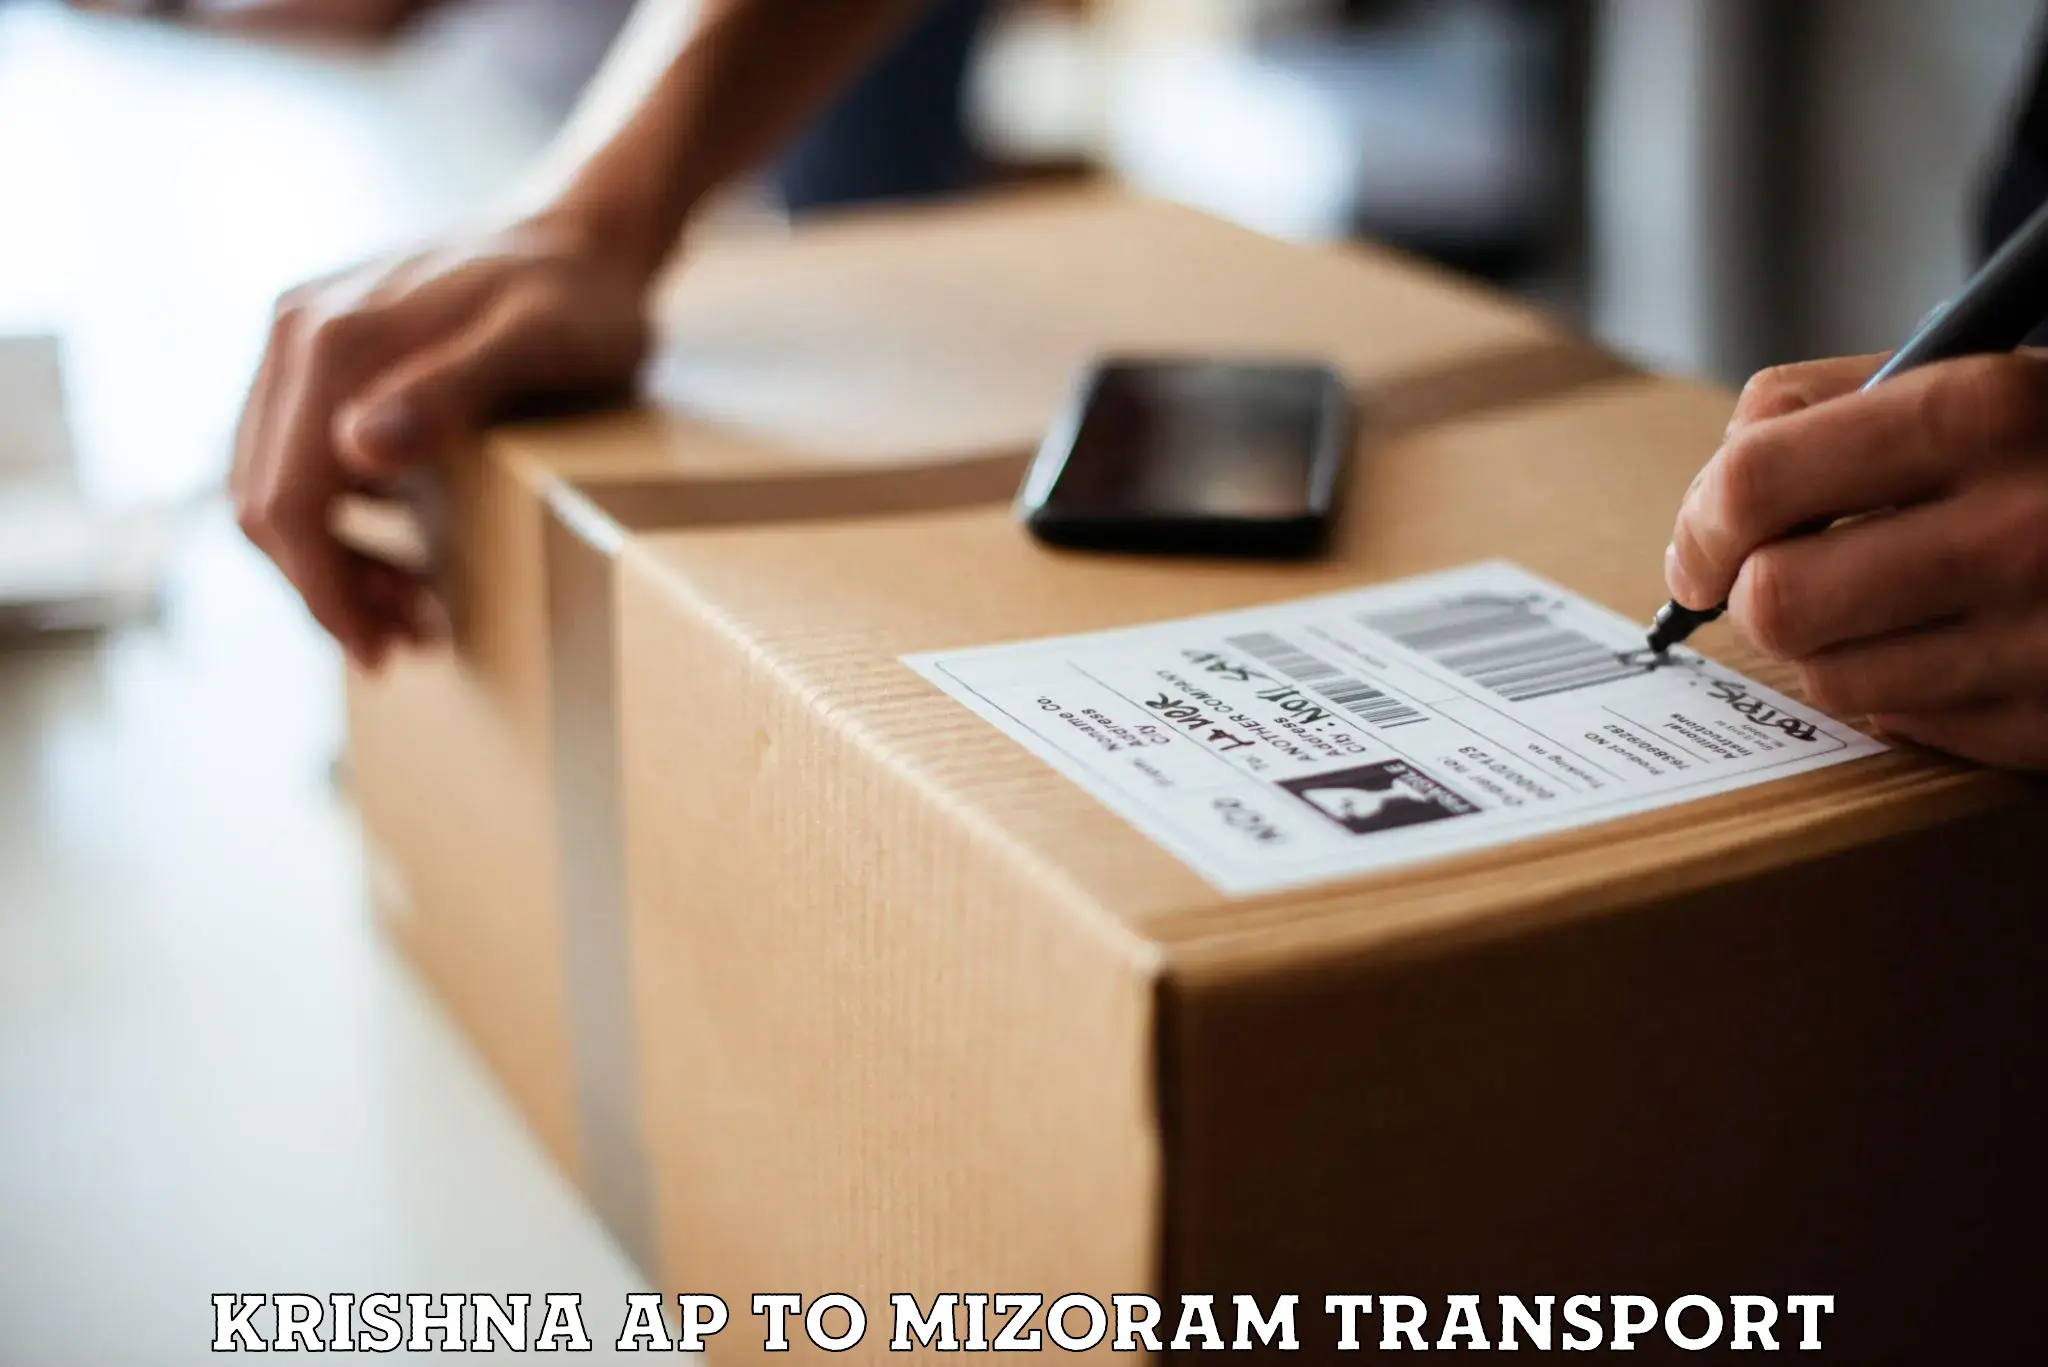 Container transport service Krishna AP to Mizoram